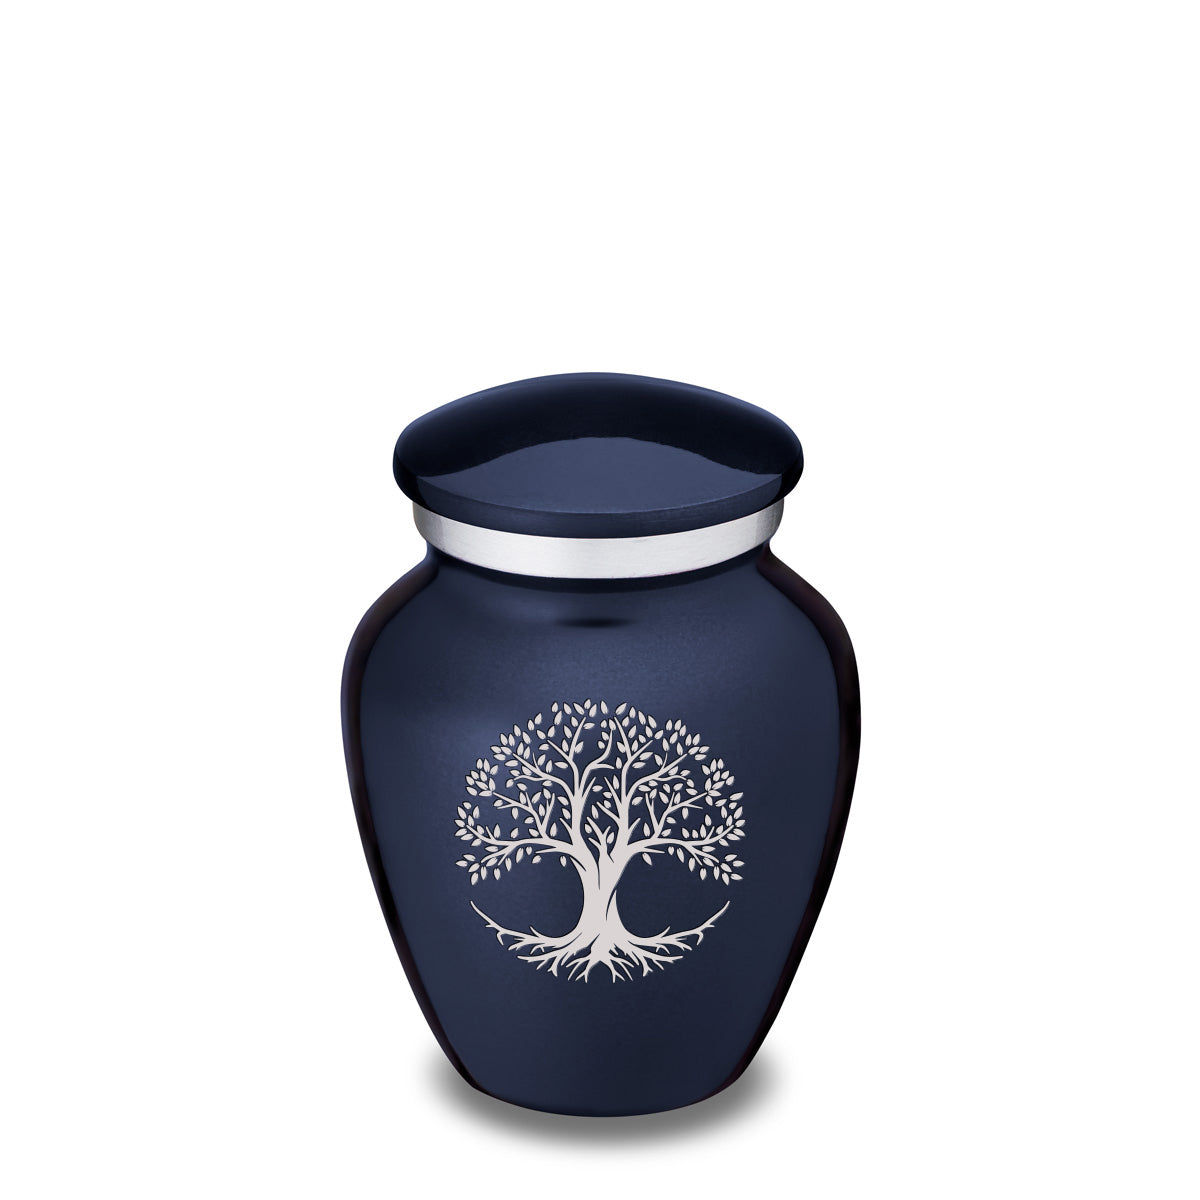 Keepsake Embrace Cobalt Blue Tree of Life Cremation Urn